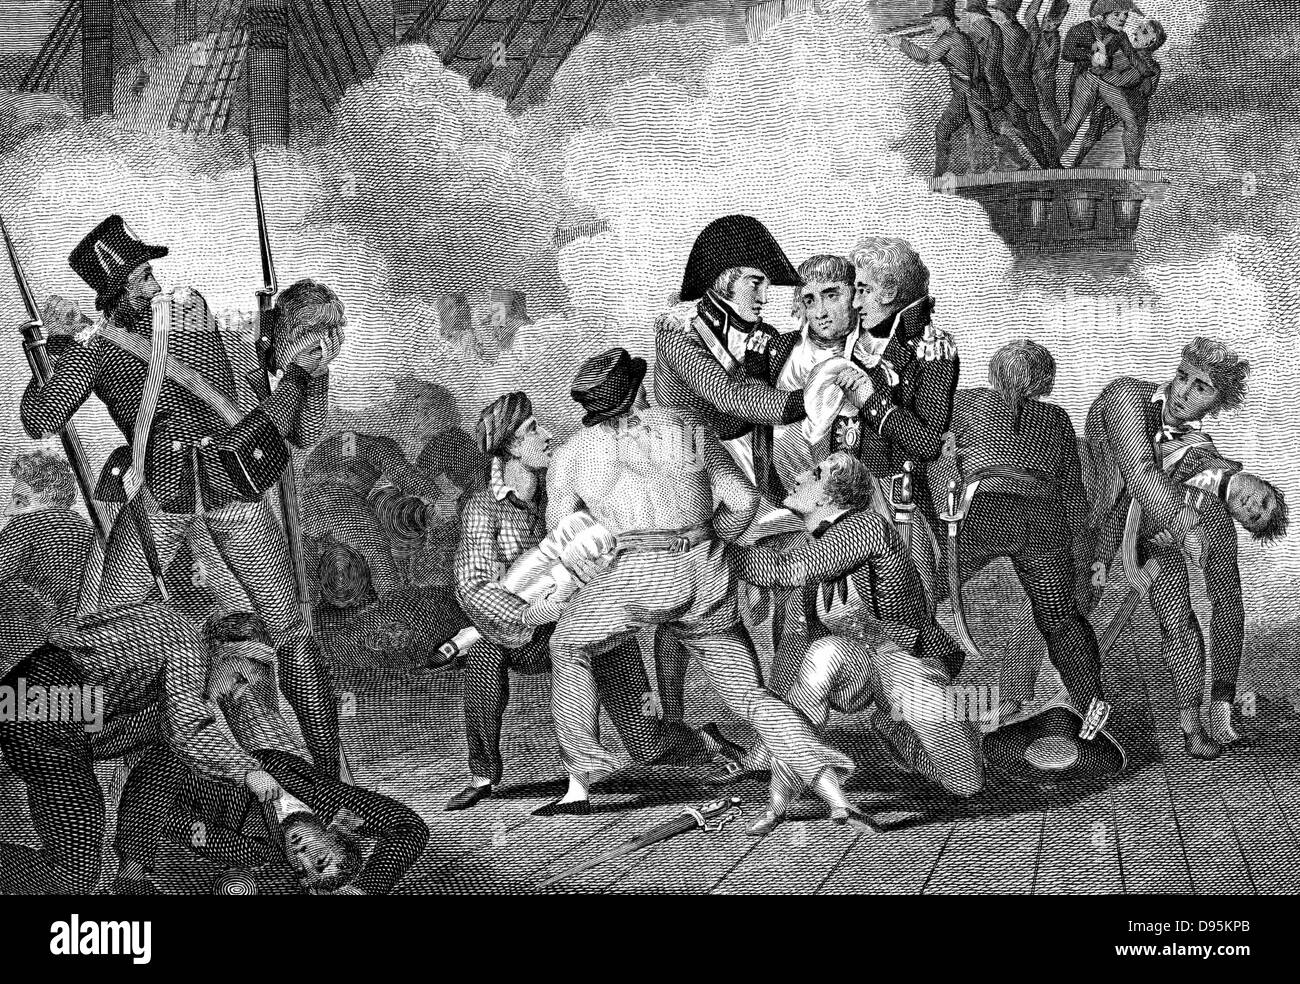 Tod von Nelson (1758-1805) an Bord der "HMS Victory" an der Schlacht von Trafalgar. Gravur von 1827 Stockfoto